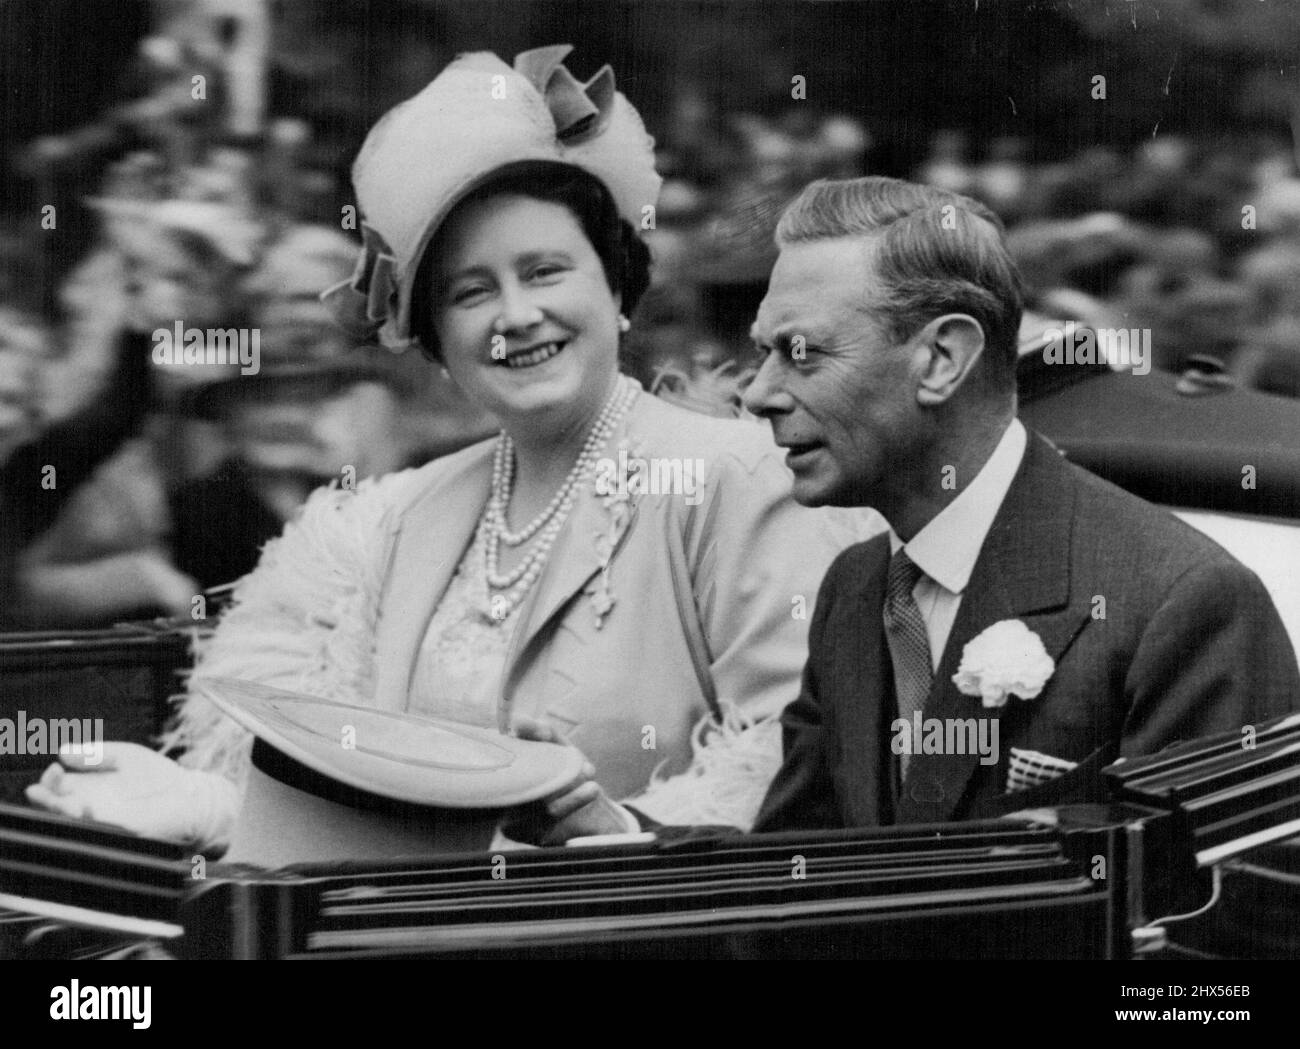 Roi et reine à Ascot -- leurs Majestés le roi et la reine photographiés dans la principale calèche de la procession royale qui était le prélude traditionnel à la deuxième journée de la réunion royale d'Ascot sur le célèbre champ de courses de Berkshire aujourd'hui, le 16 juin. 29 juin 1948. (Photo par photo de presse associée) Banque D'Images